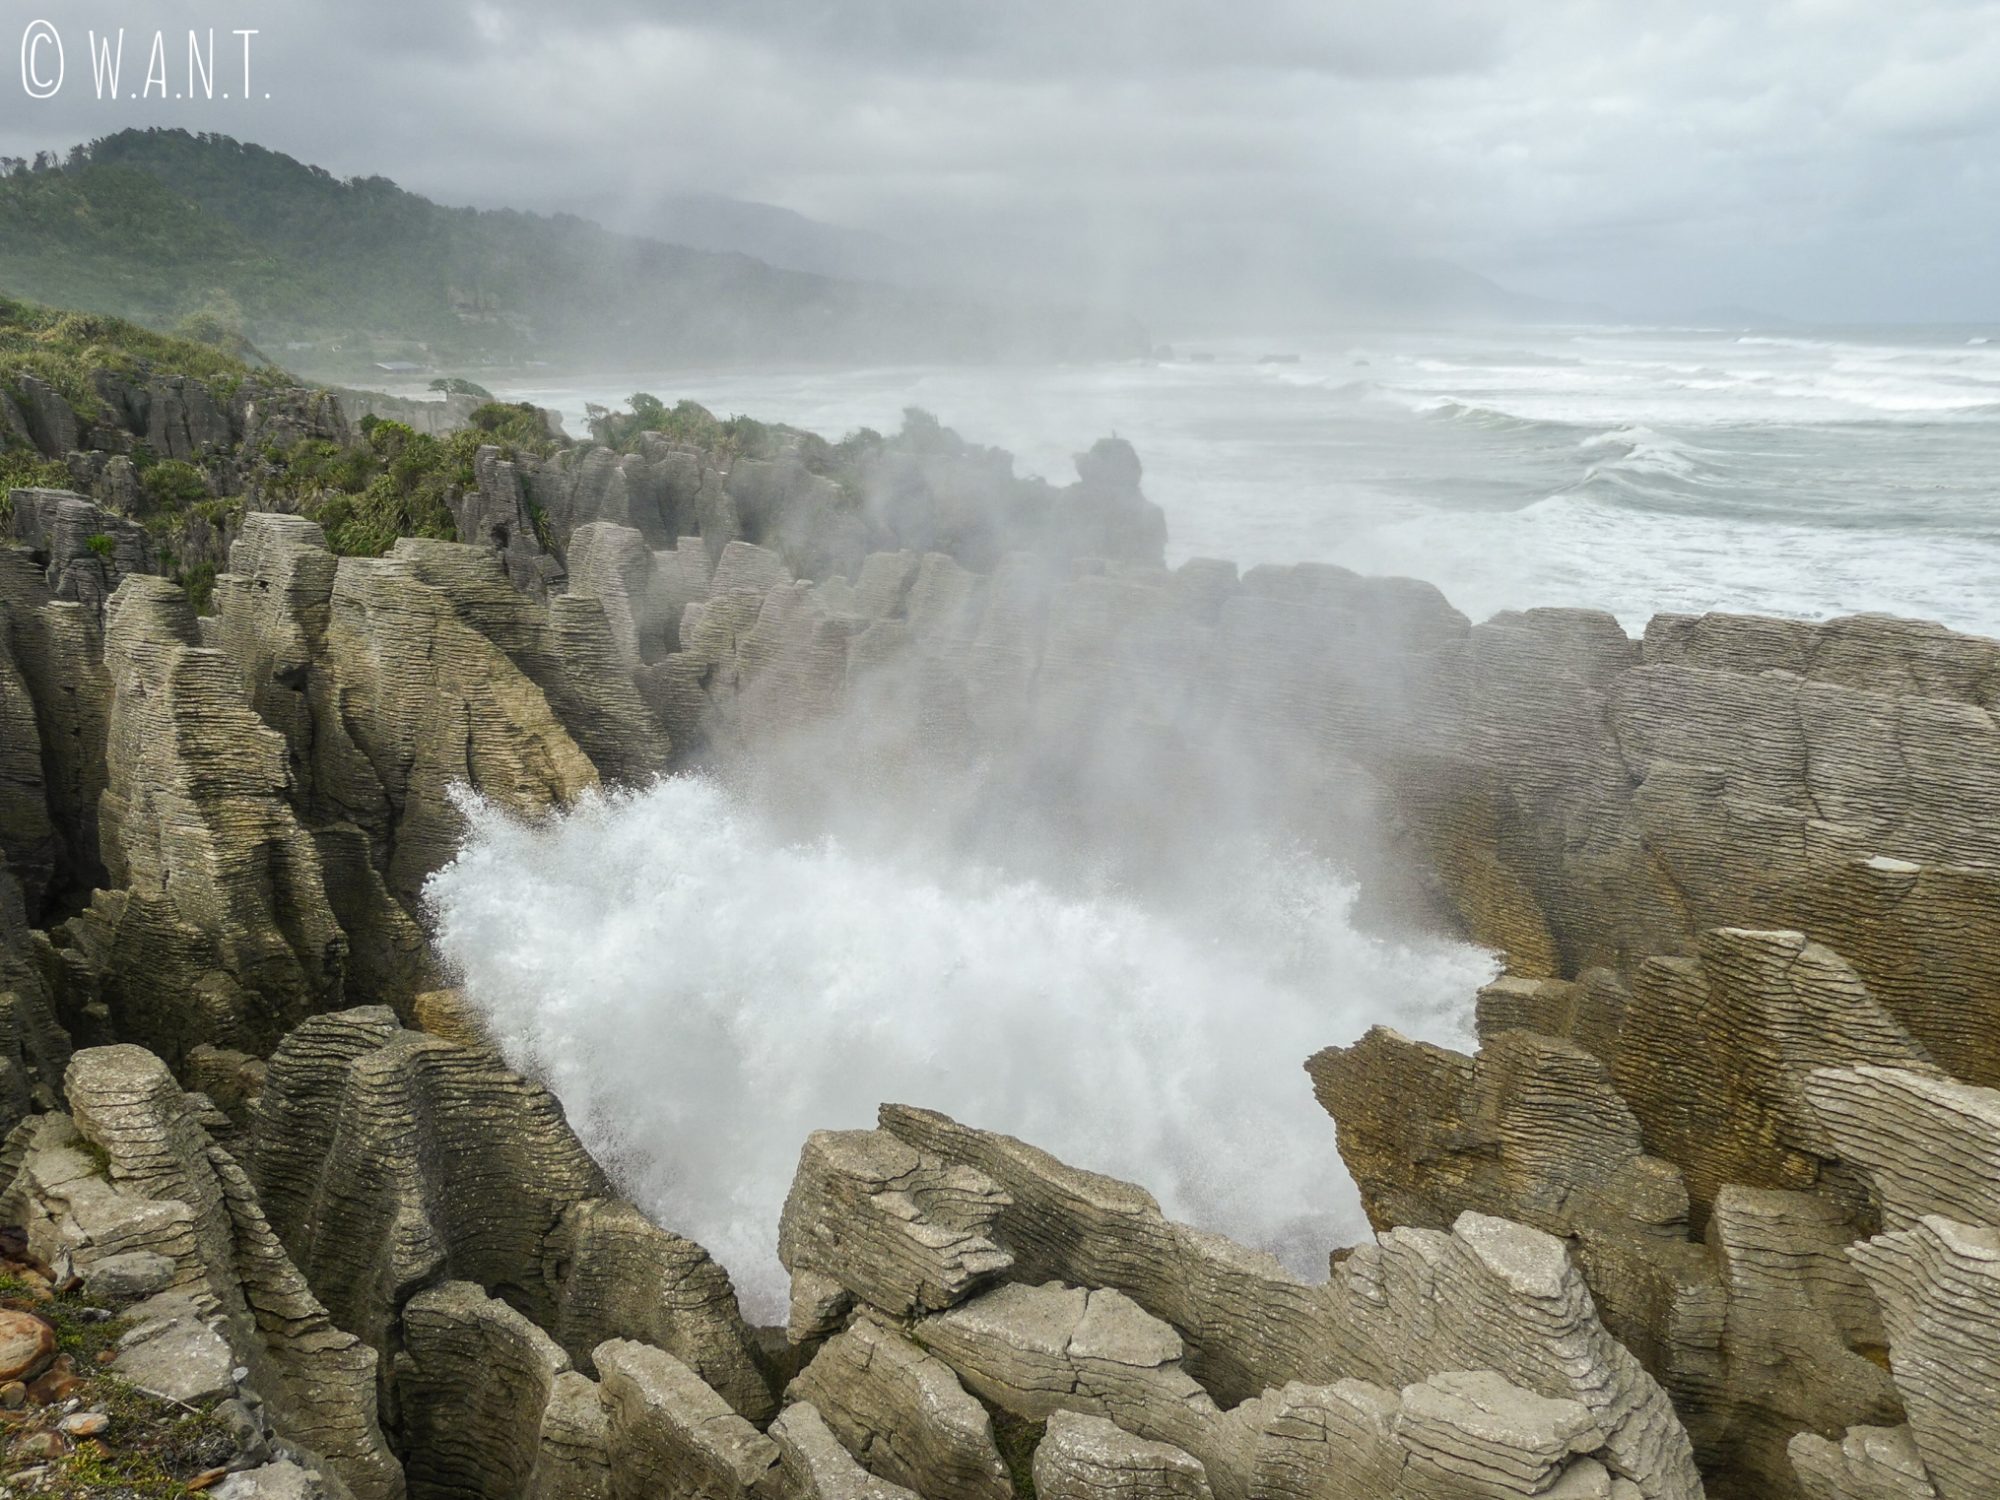 L'eau éclabousse les visiteurs qui observent ce phénomène depuis la plateforme d'observation des Pancake Rocks en Nouvelle-Zélande